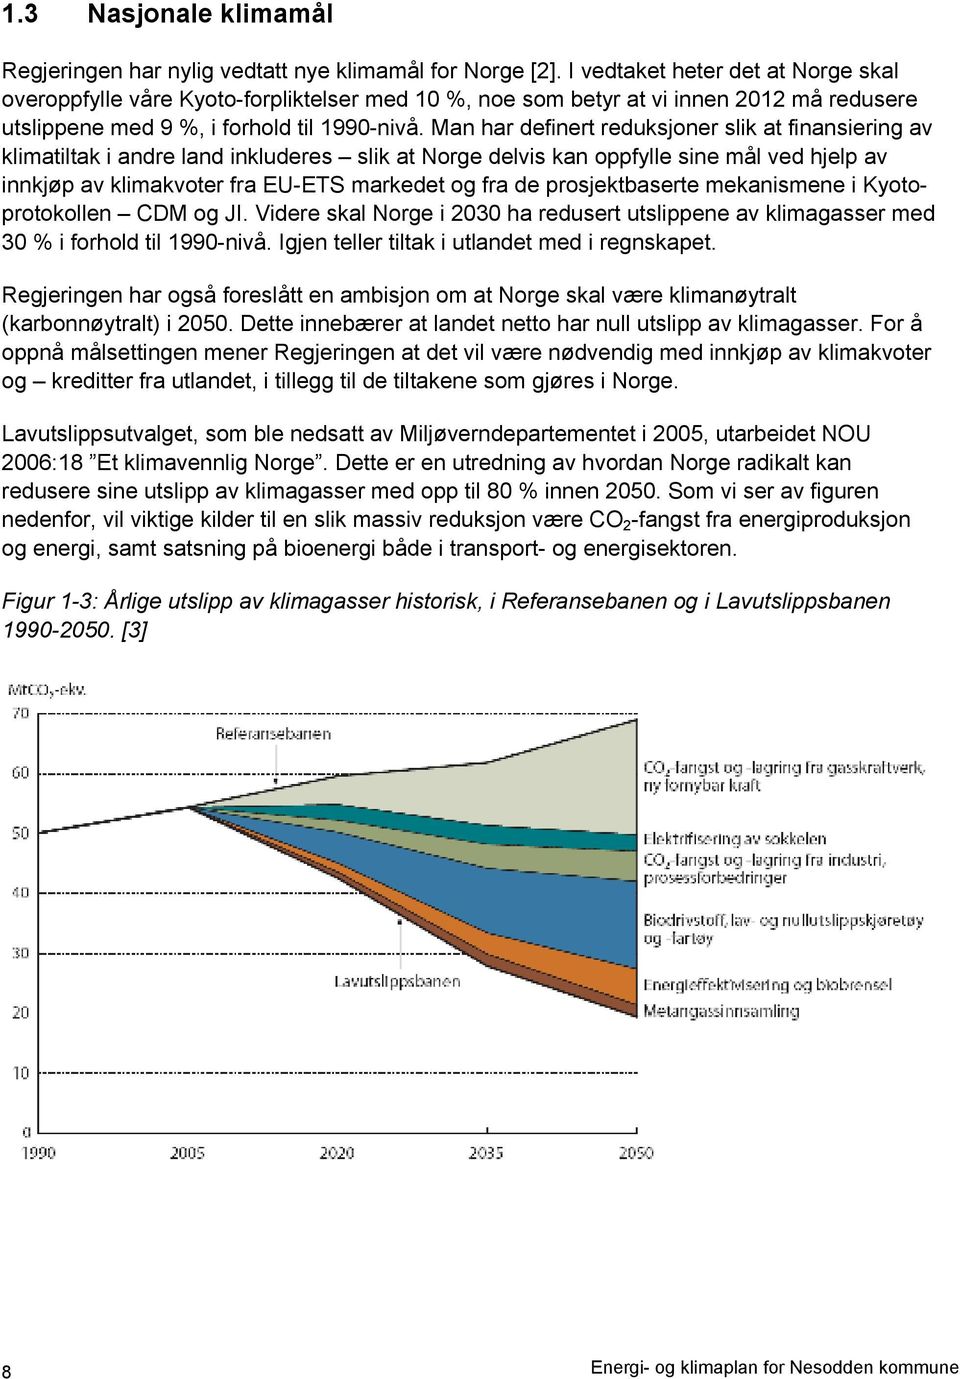 Man har definert reduksjoner slik at finansiering av klimatiltak i andre land inkluderes slik at Norge delvis kan oppfylle sine mål ved hjelp av innkjøp av klimakvoter fra EU-ETS markedet og fra de